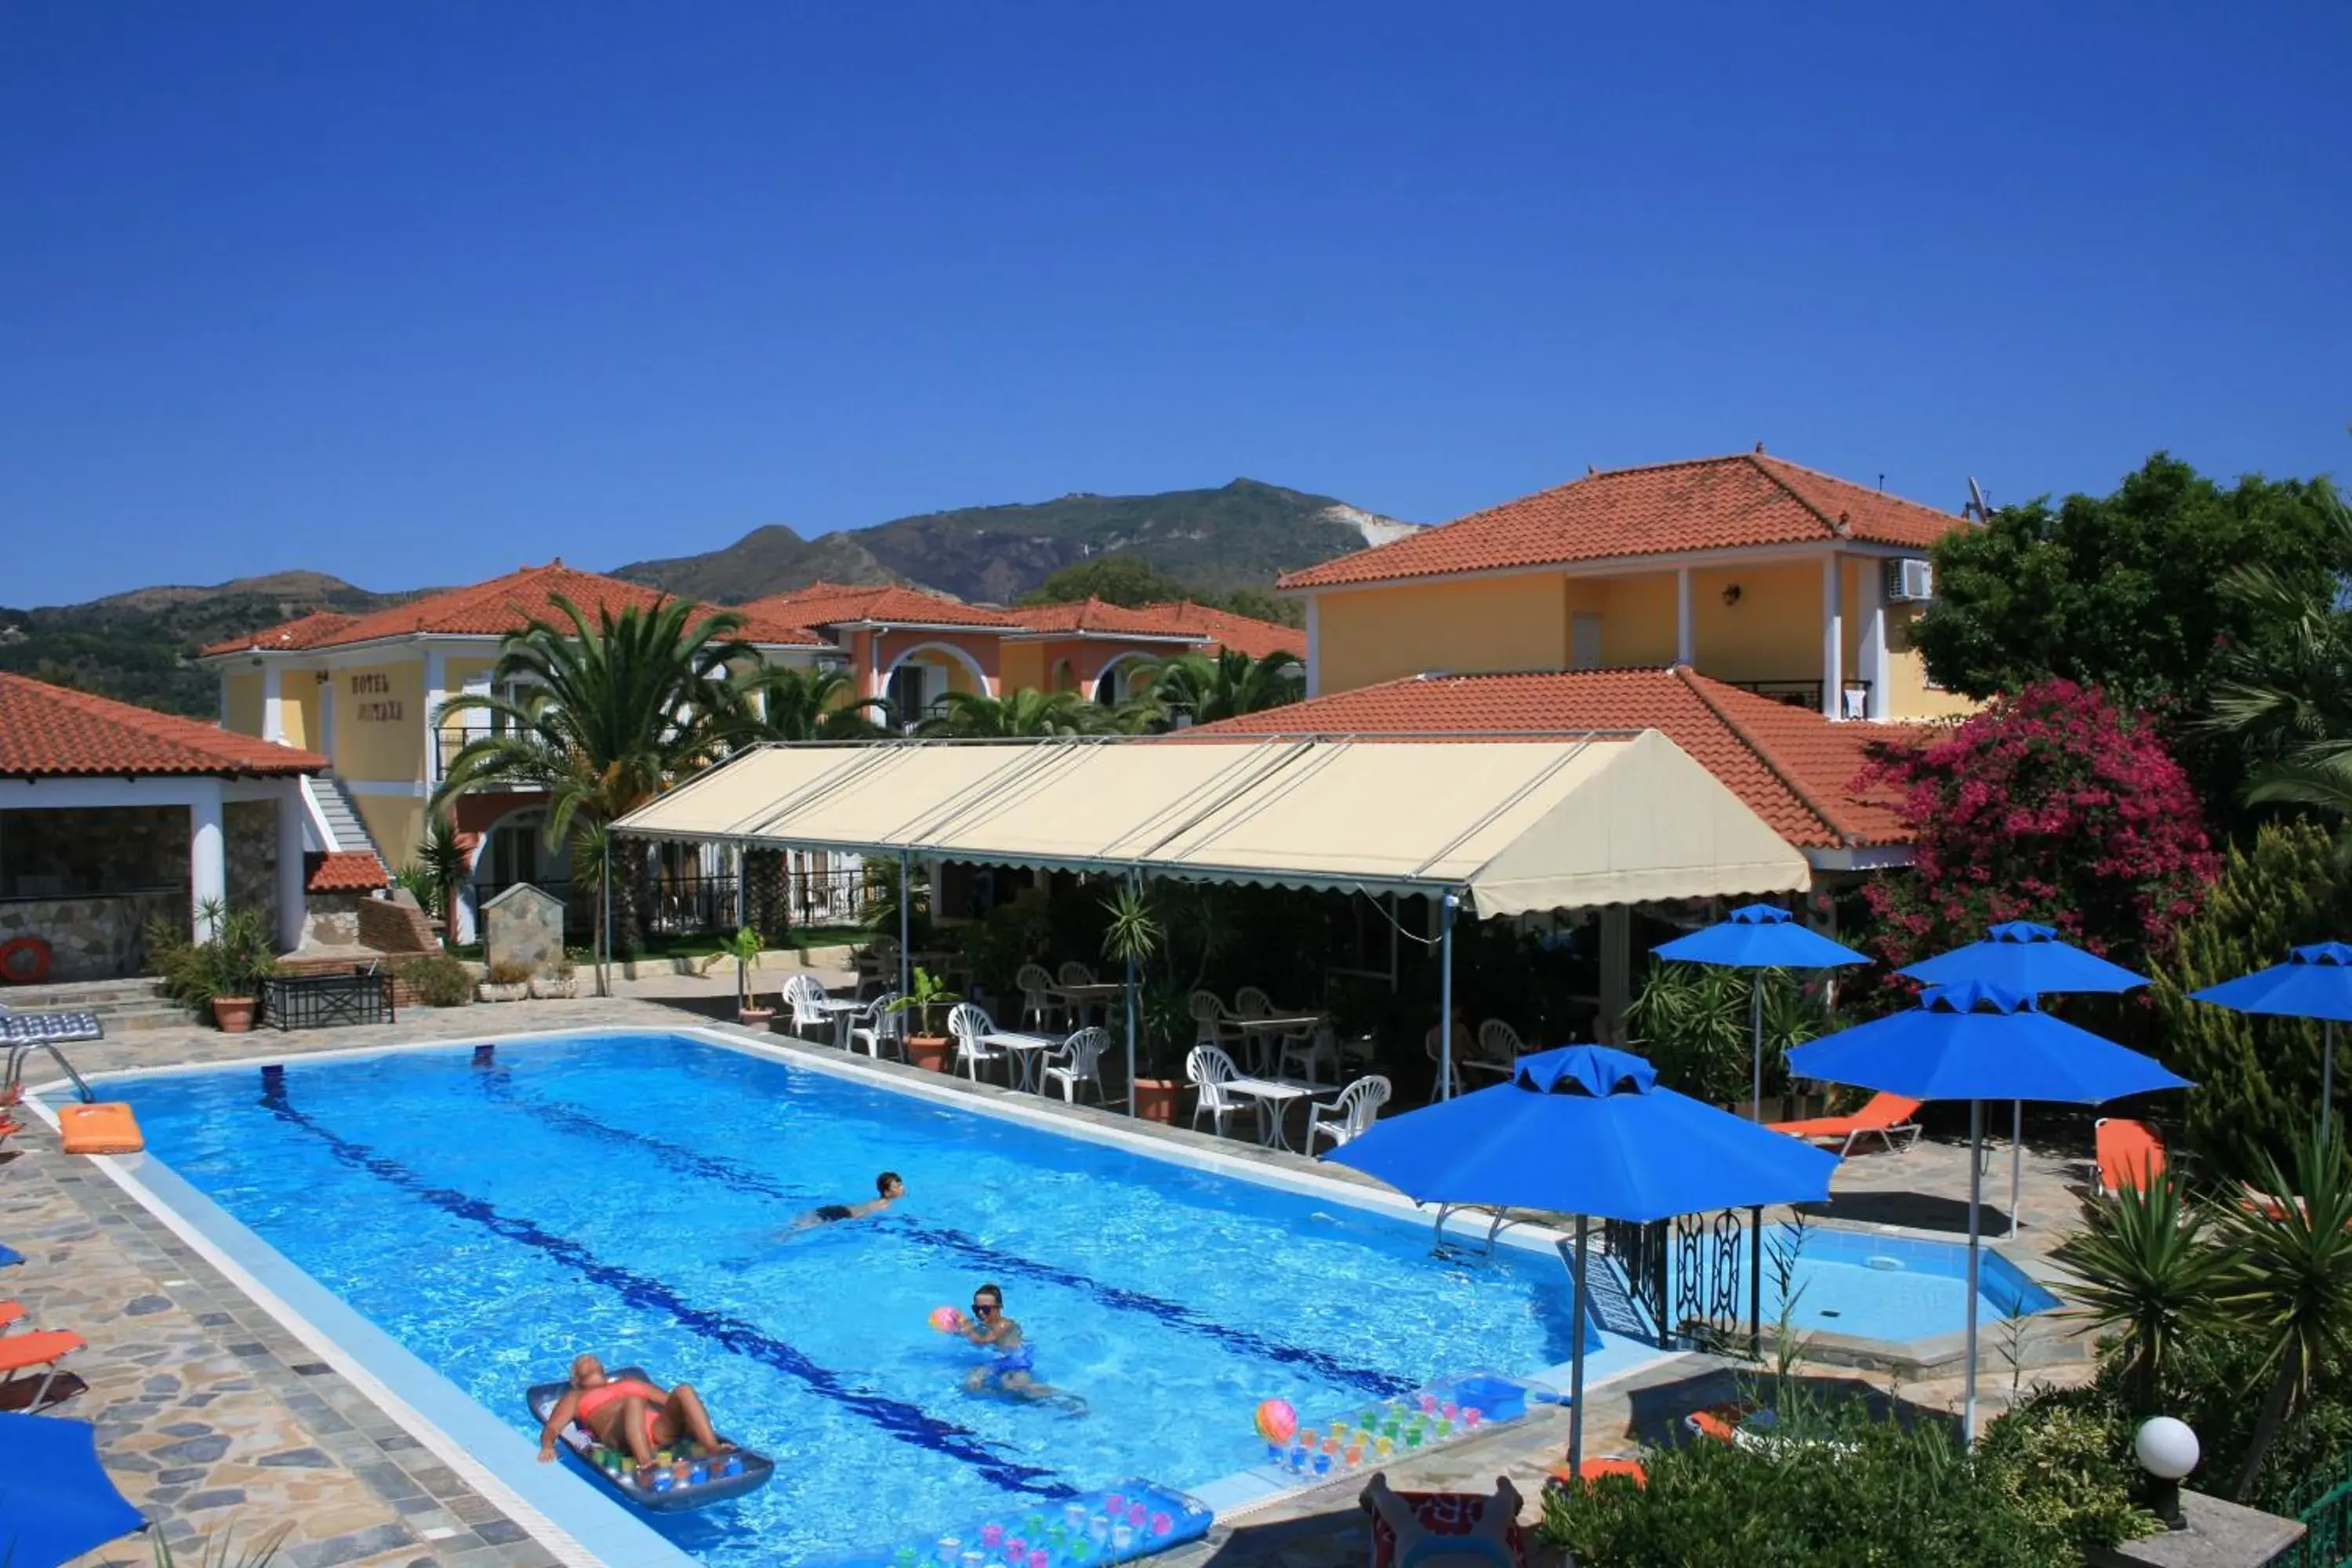 Day, Swimming Pool in Metaxa Hotel